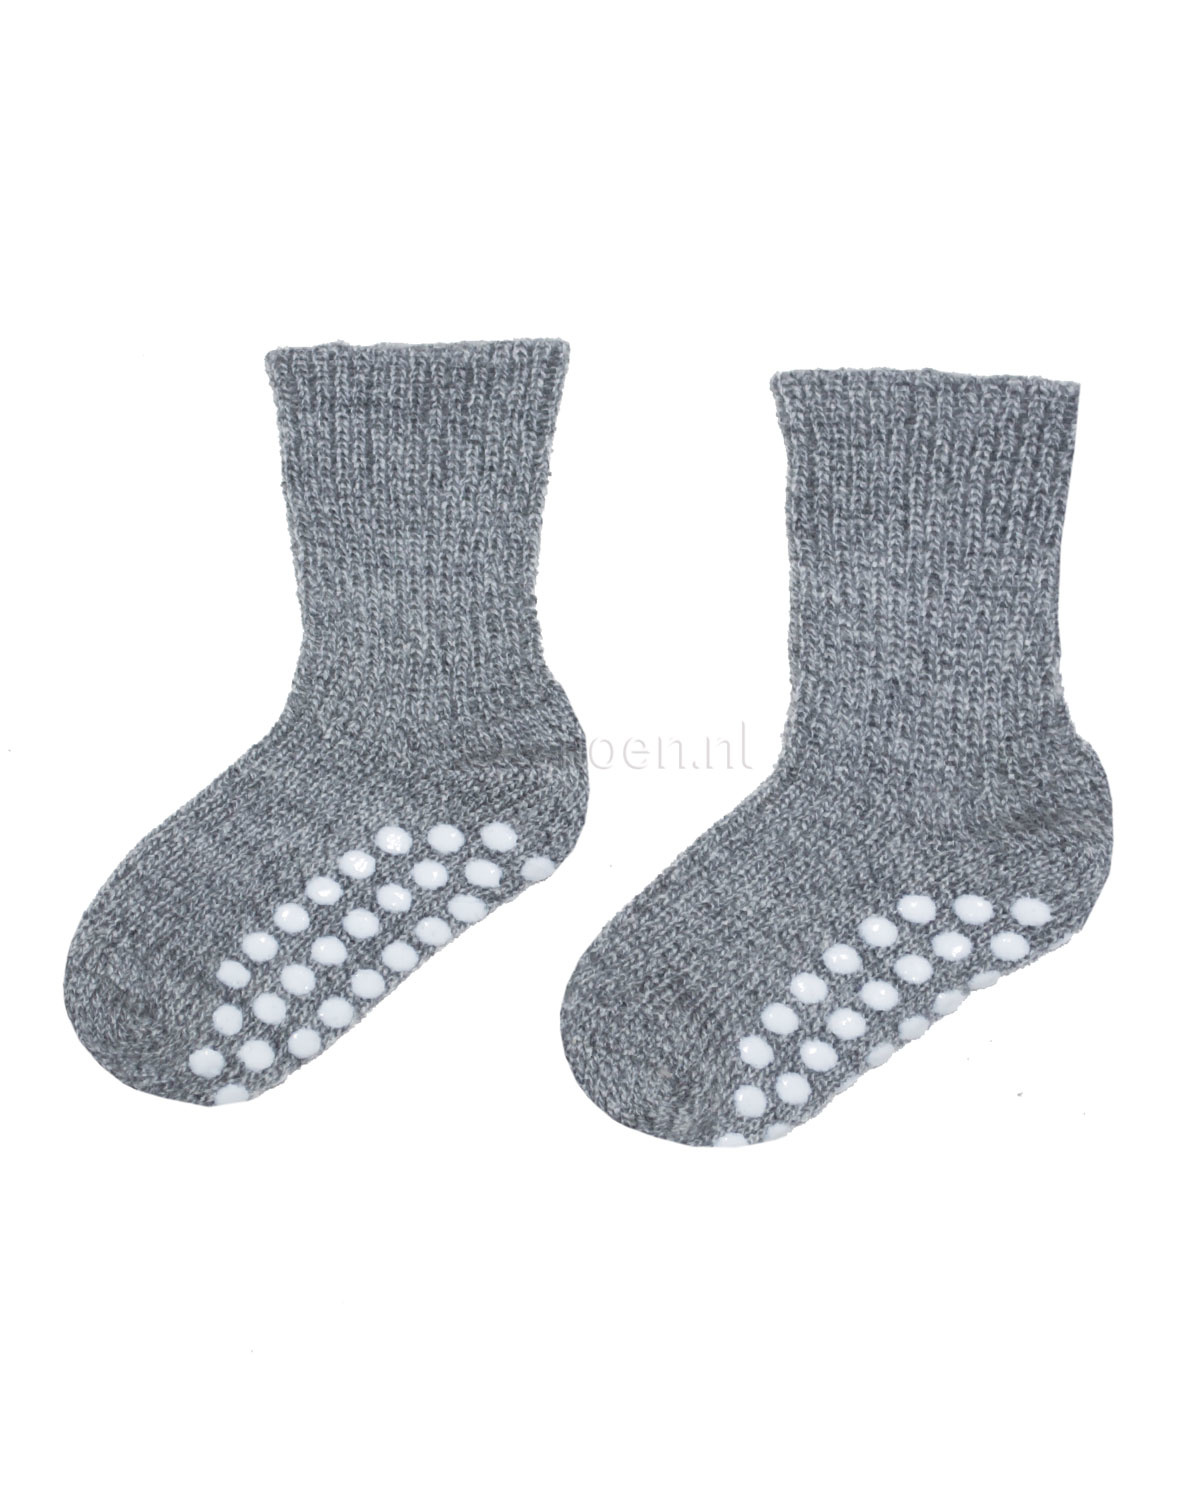 Nageslacht pasta grafisch Hirsch Natur Wollen sokken met anti-slip stippen - grijs - Ziloen